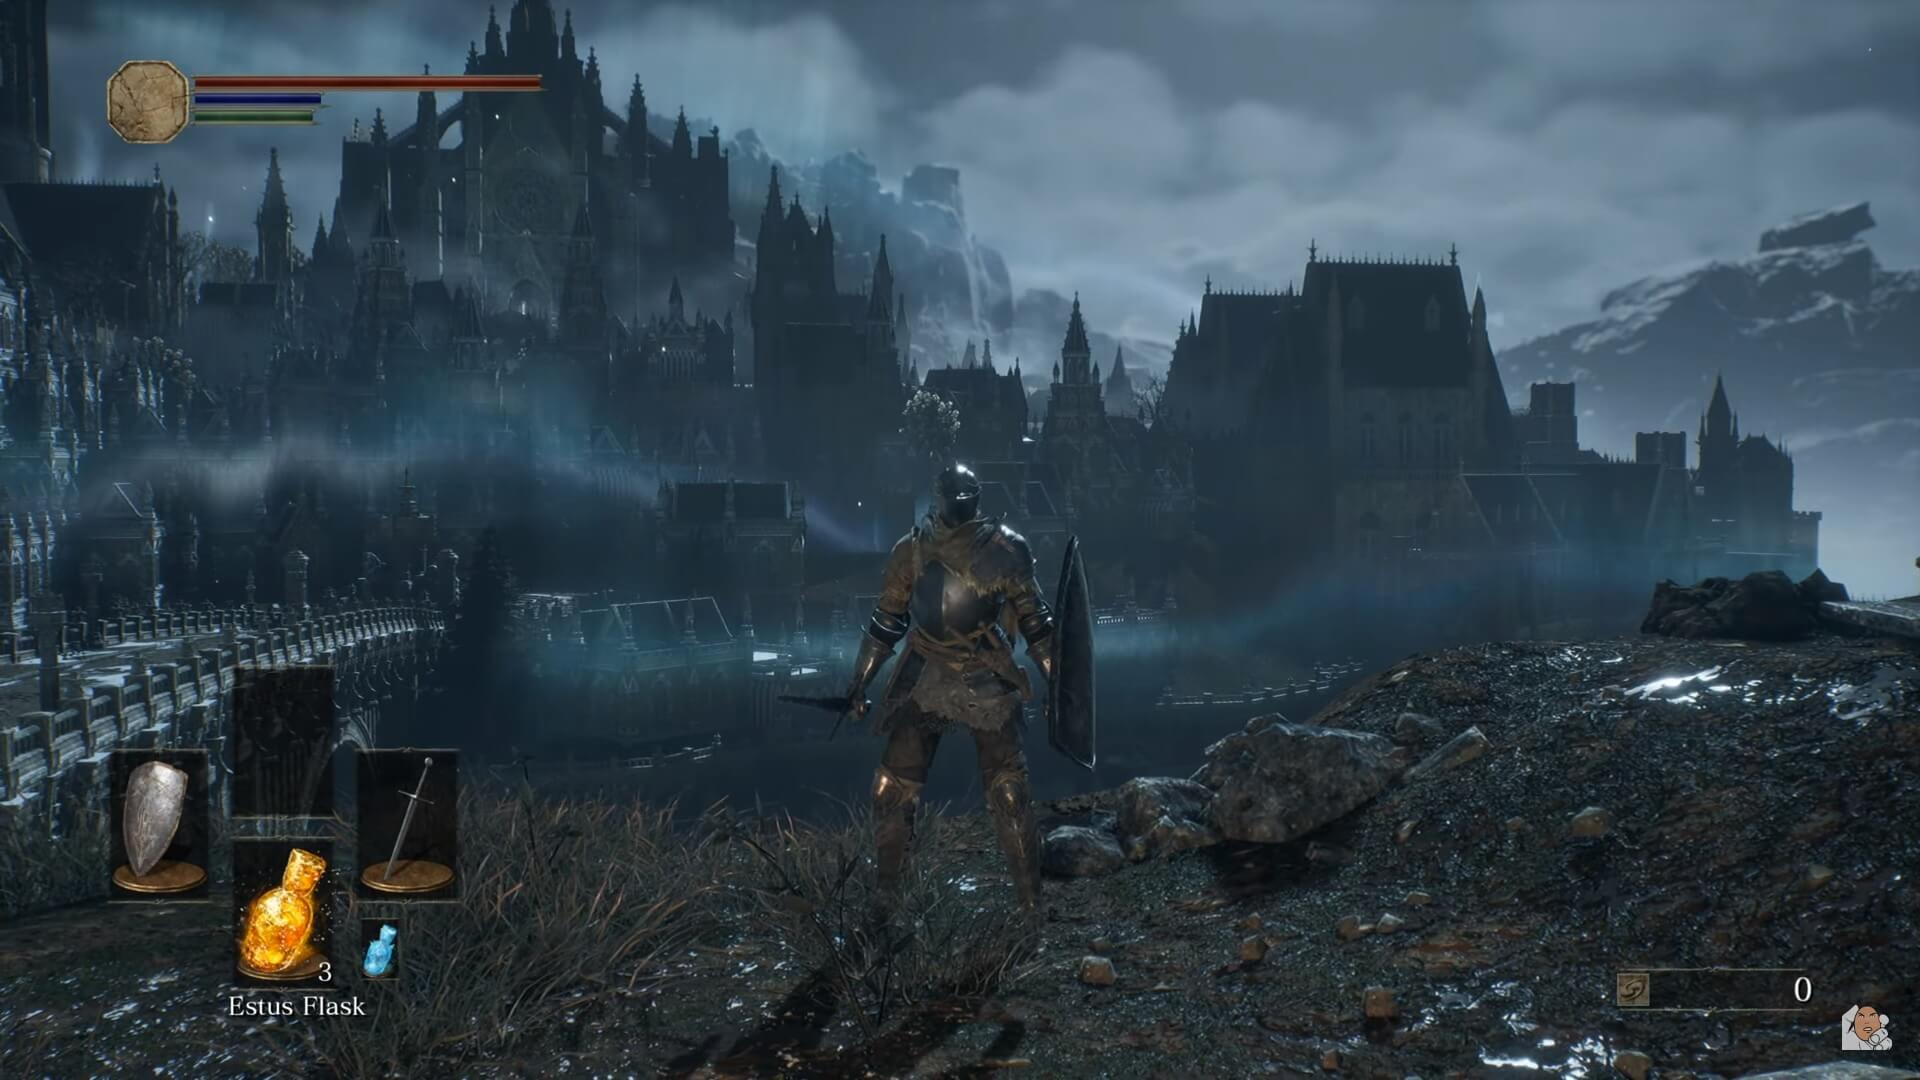 Dark Souls 3 tem cena recriada na Unreal Engine 5 com melhor visual e  desempenho 